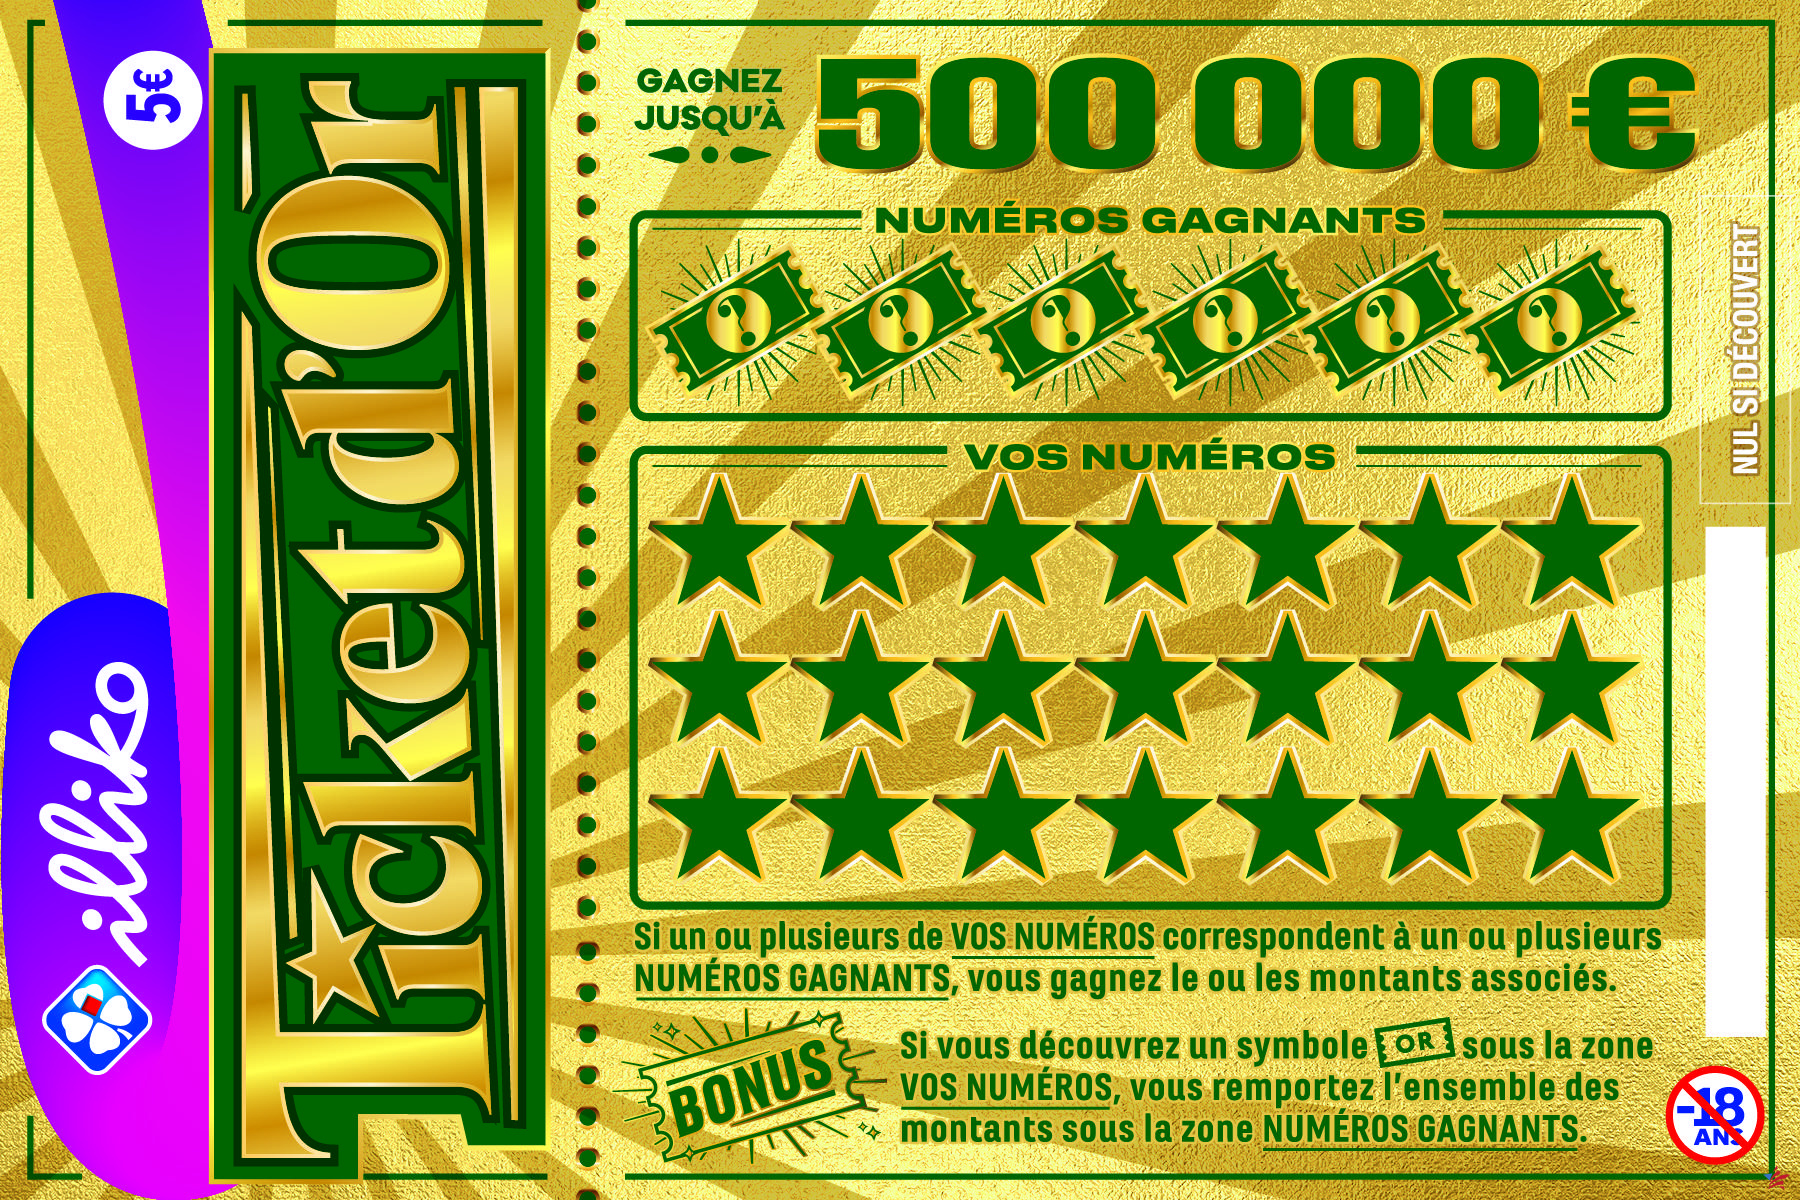 “Golden Ticket”: la FDJ lanza su nuevo juego rasca y gana… con 500.000 euros en juego